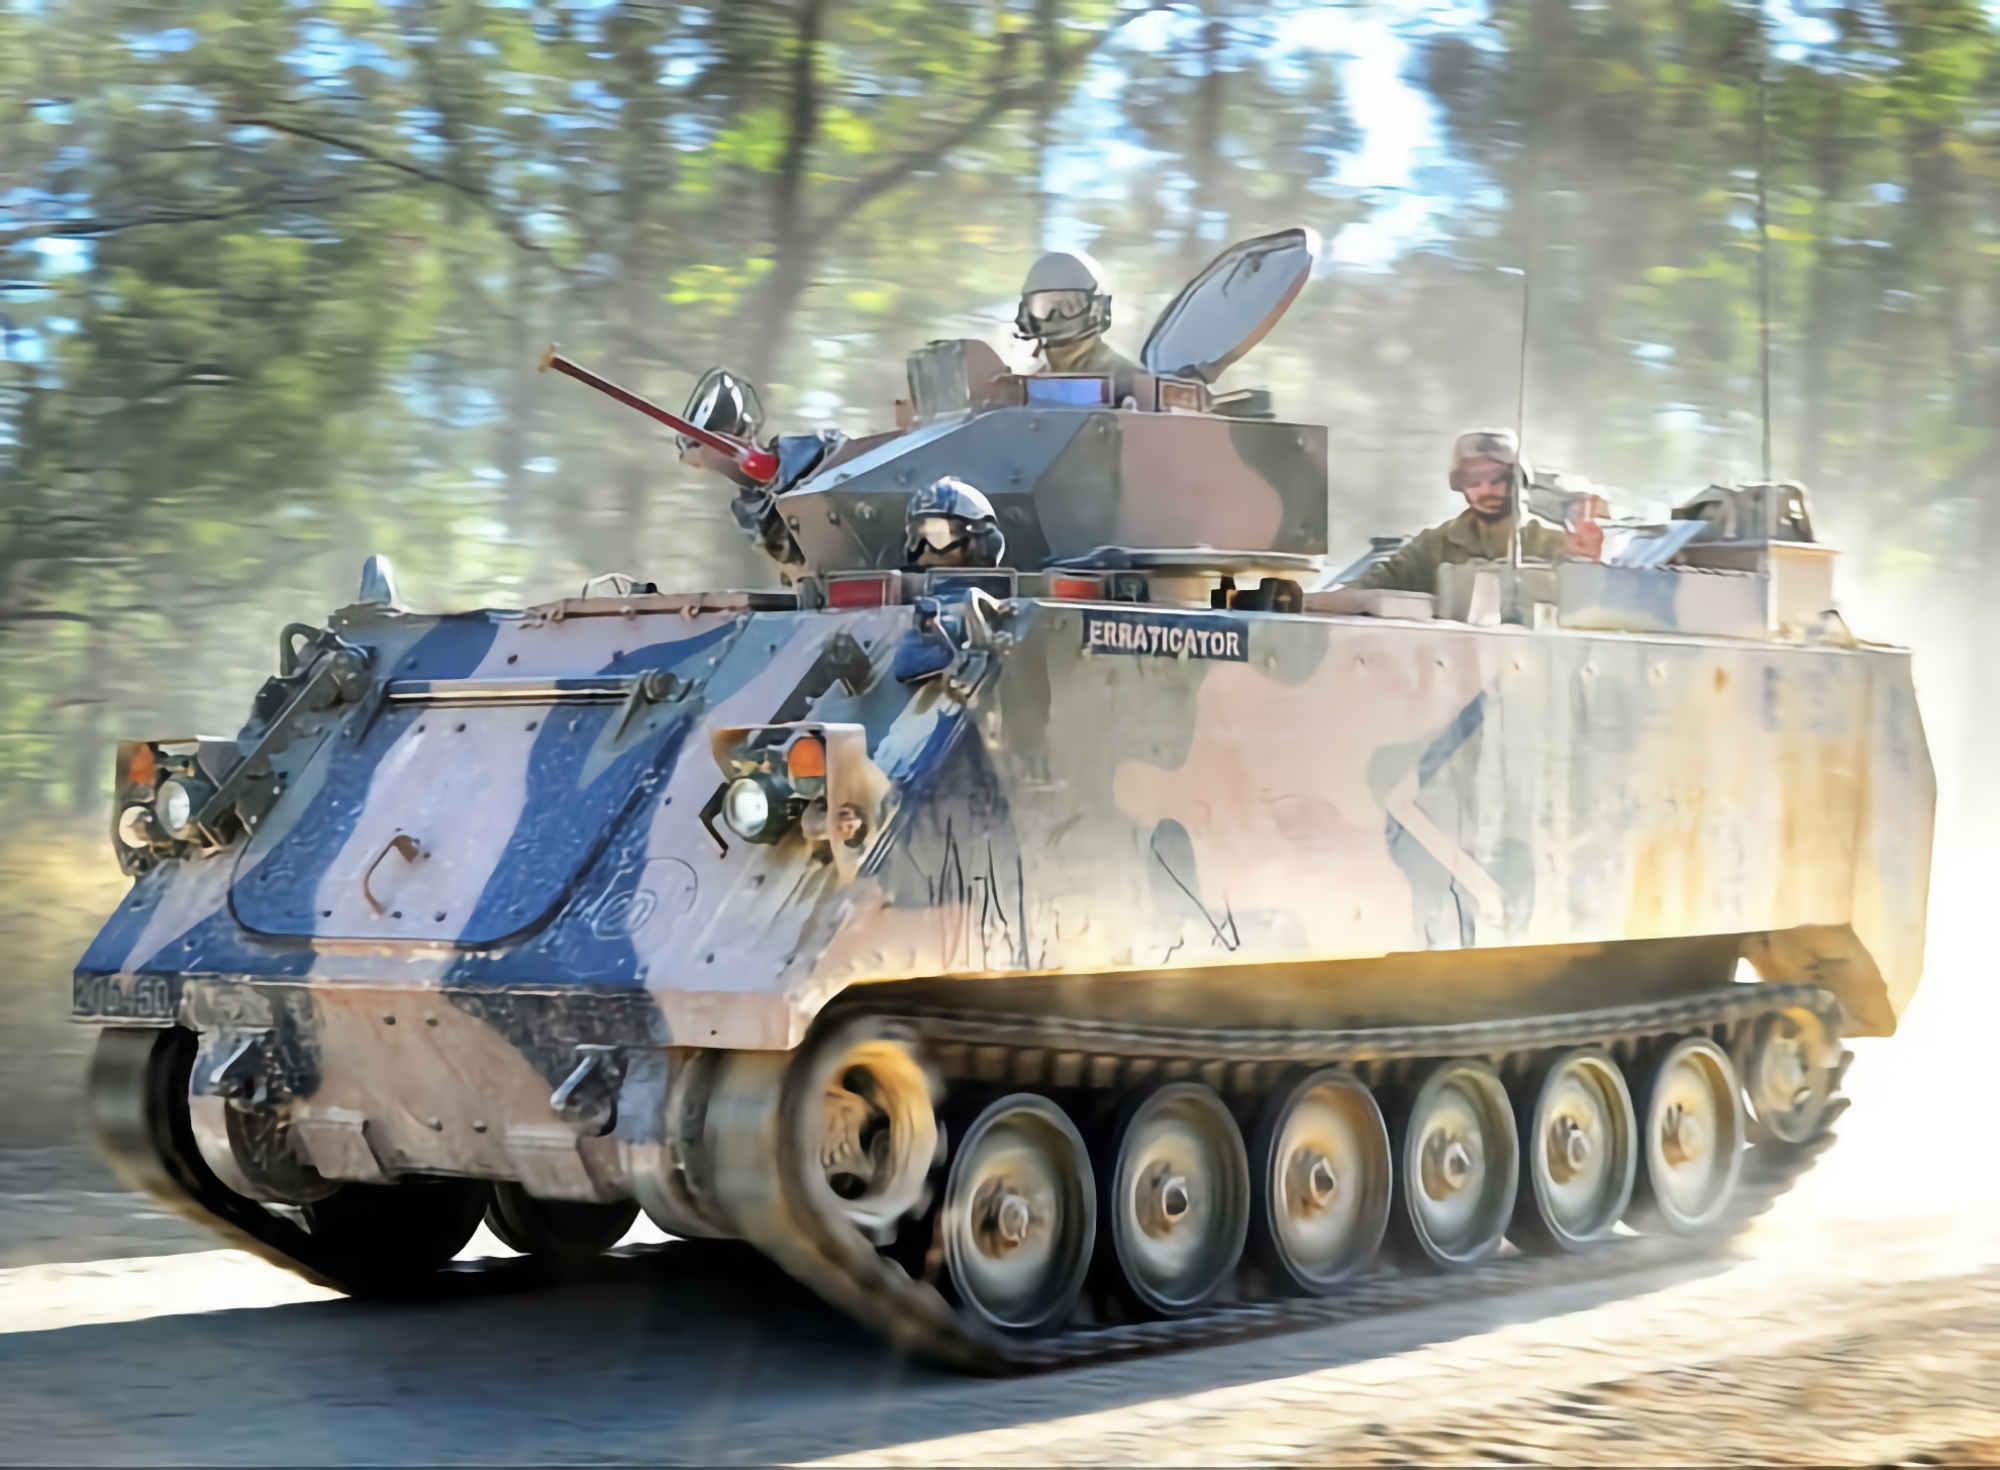 Le forze armate ucraine utilizzano già al fronte i veicoli corazzati M113AS4, inviati all'Ucraina dall'Australia.